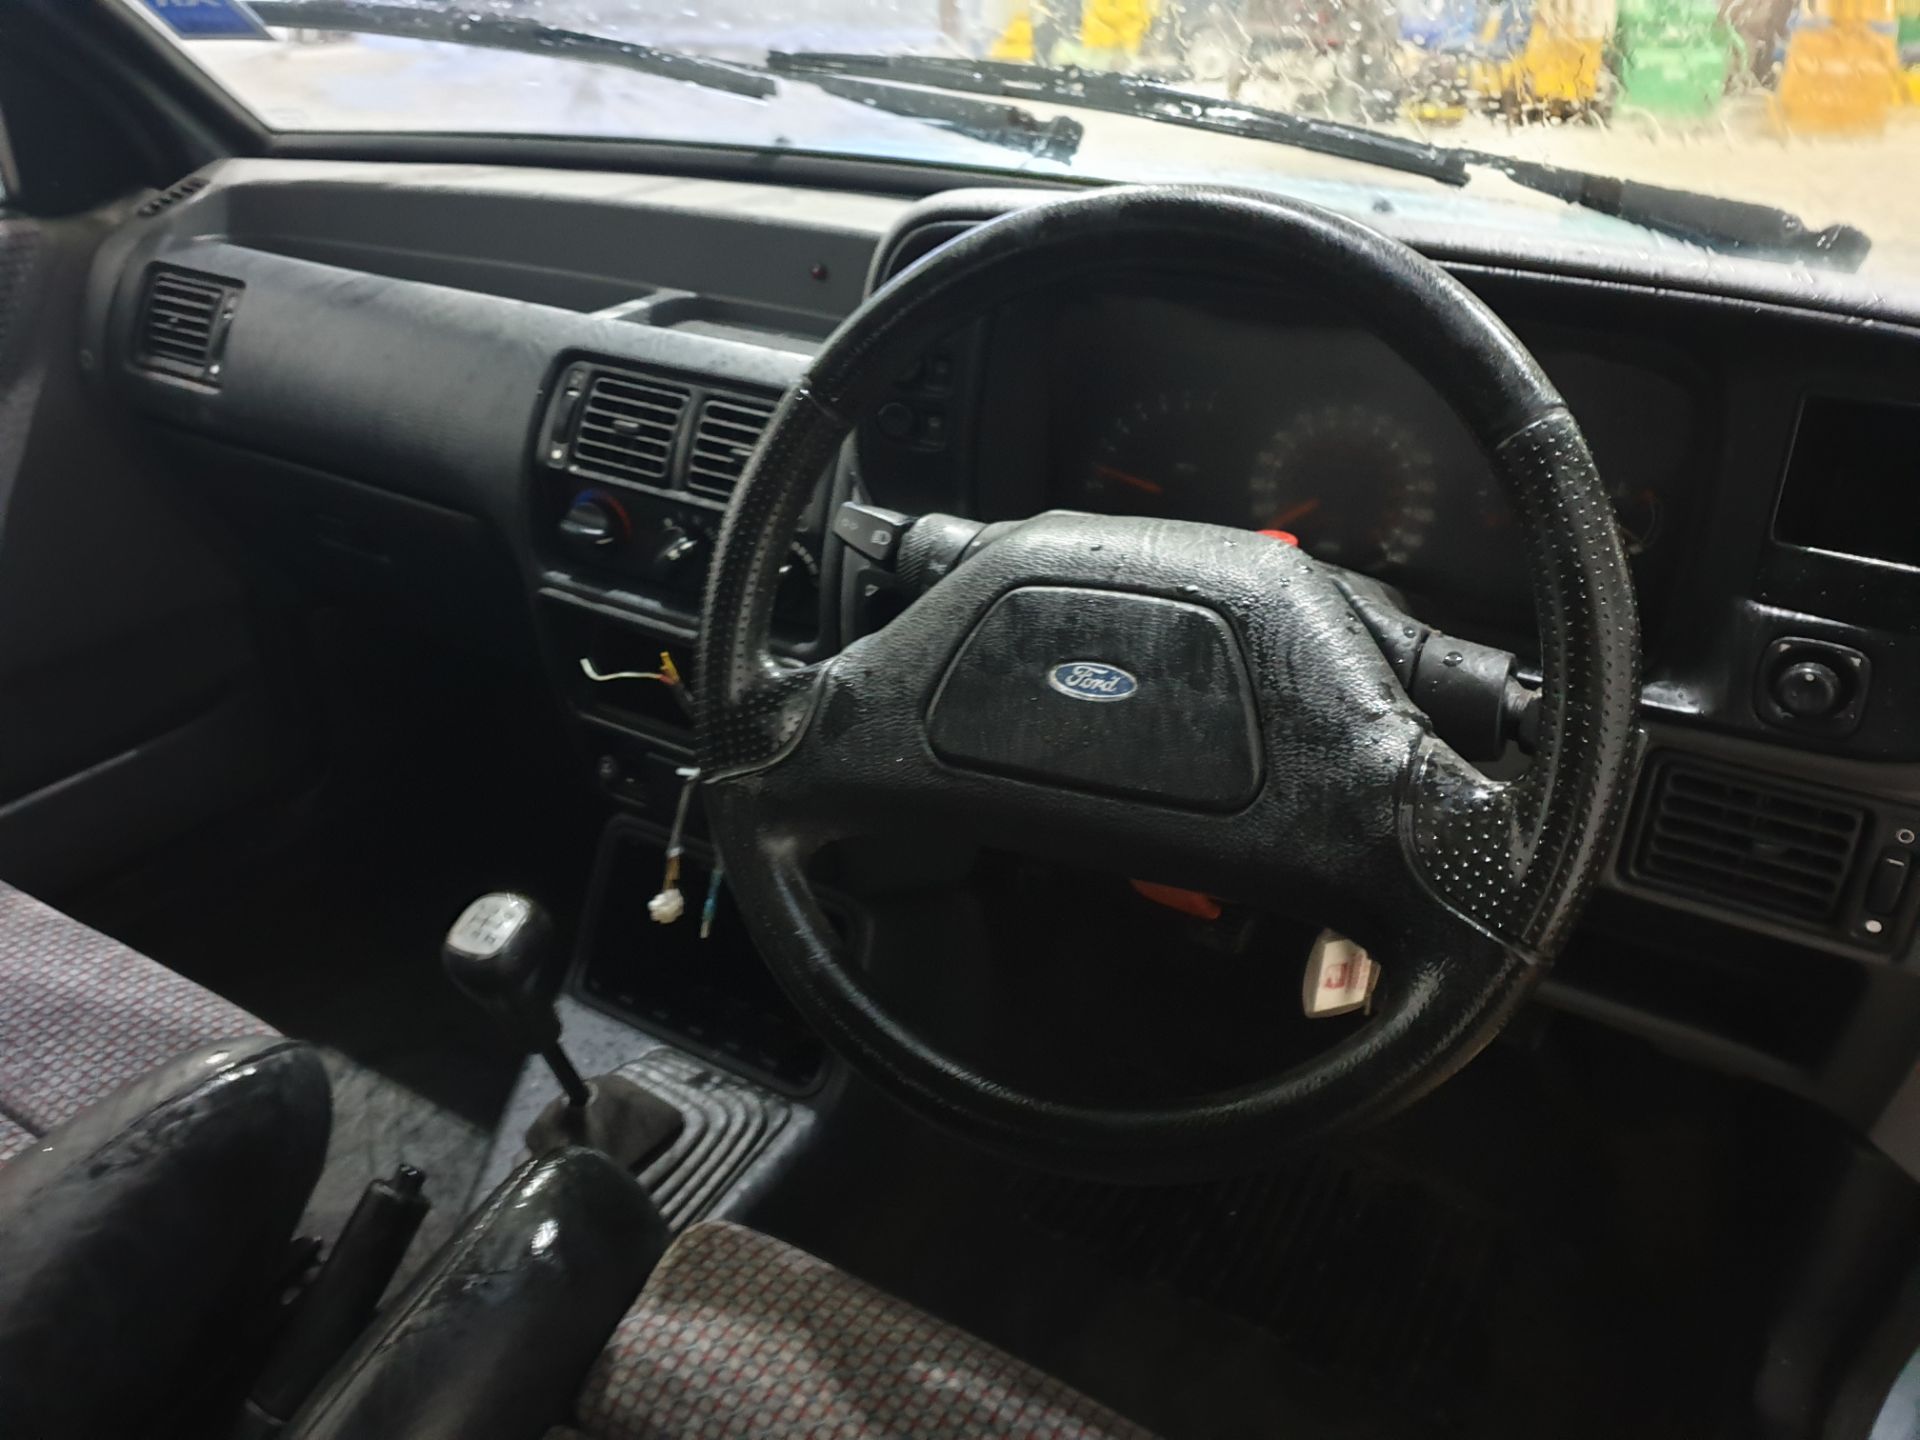 1988 Ford Escort XR3I Cabriolet - Image 11 of 12